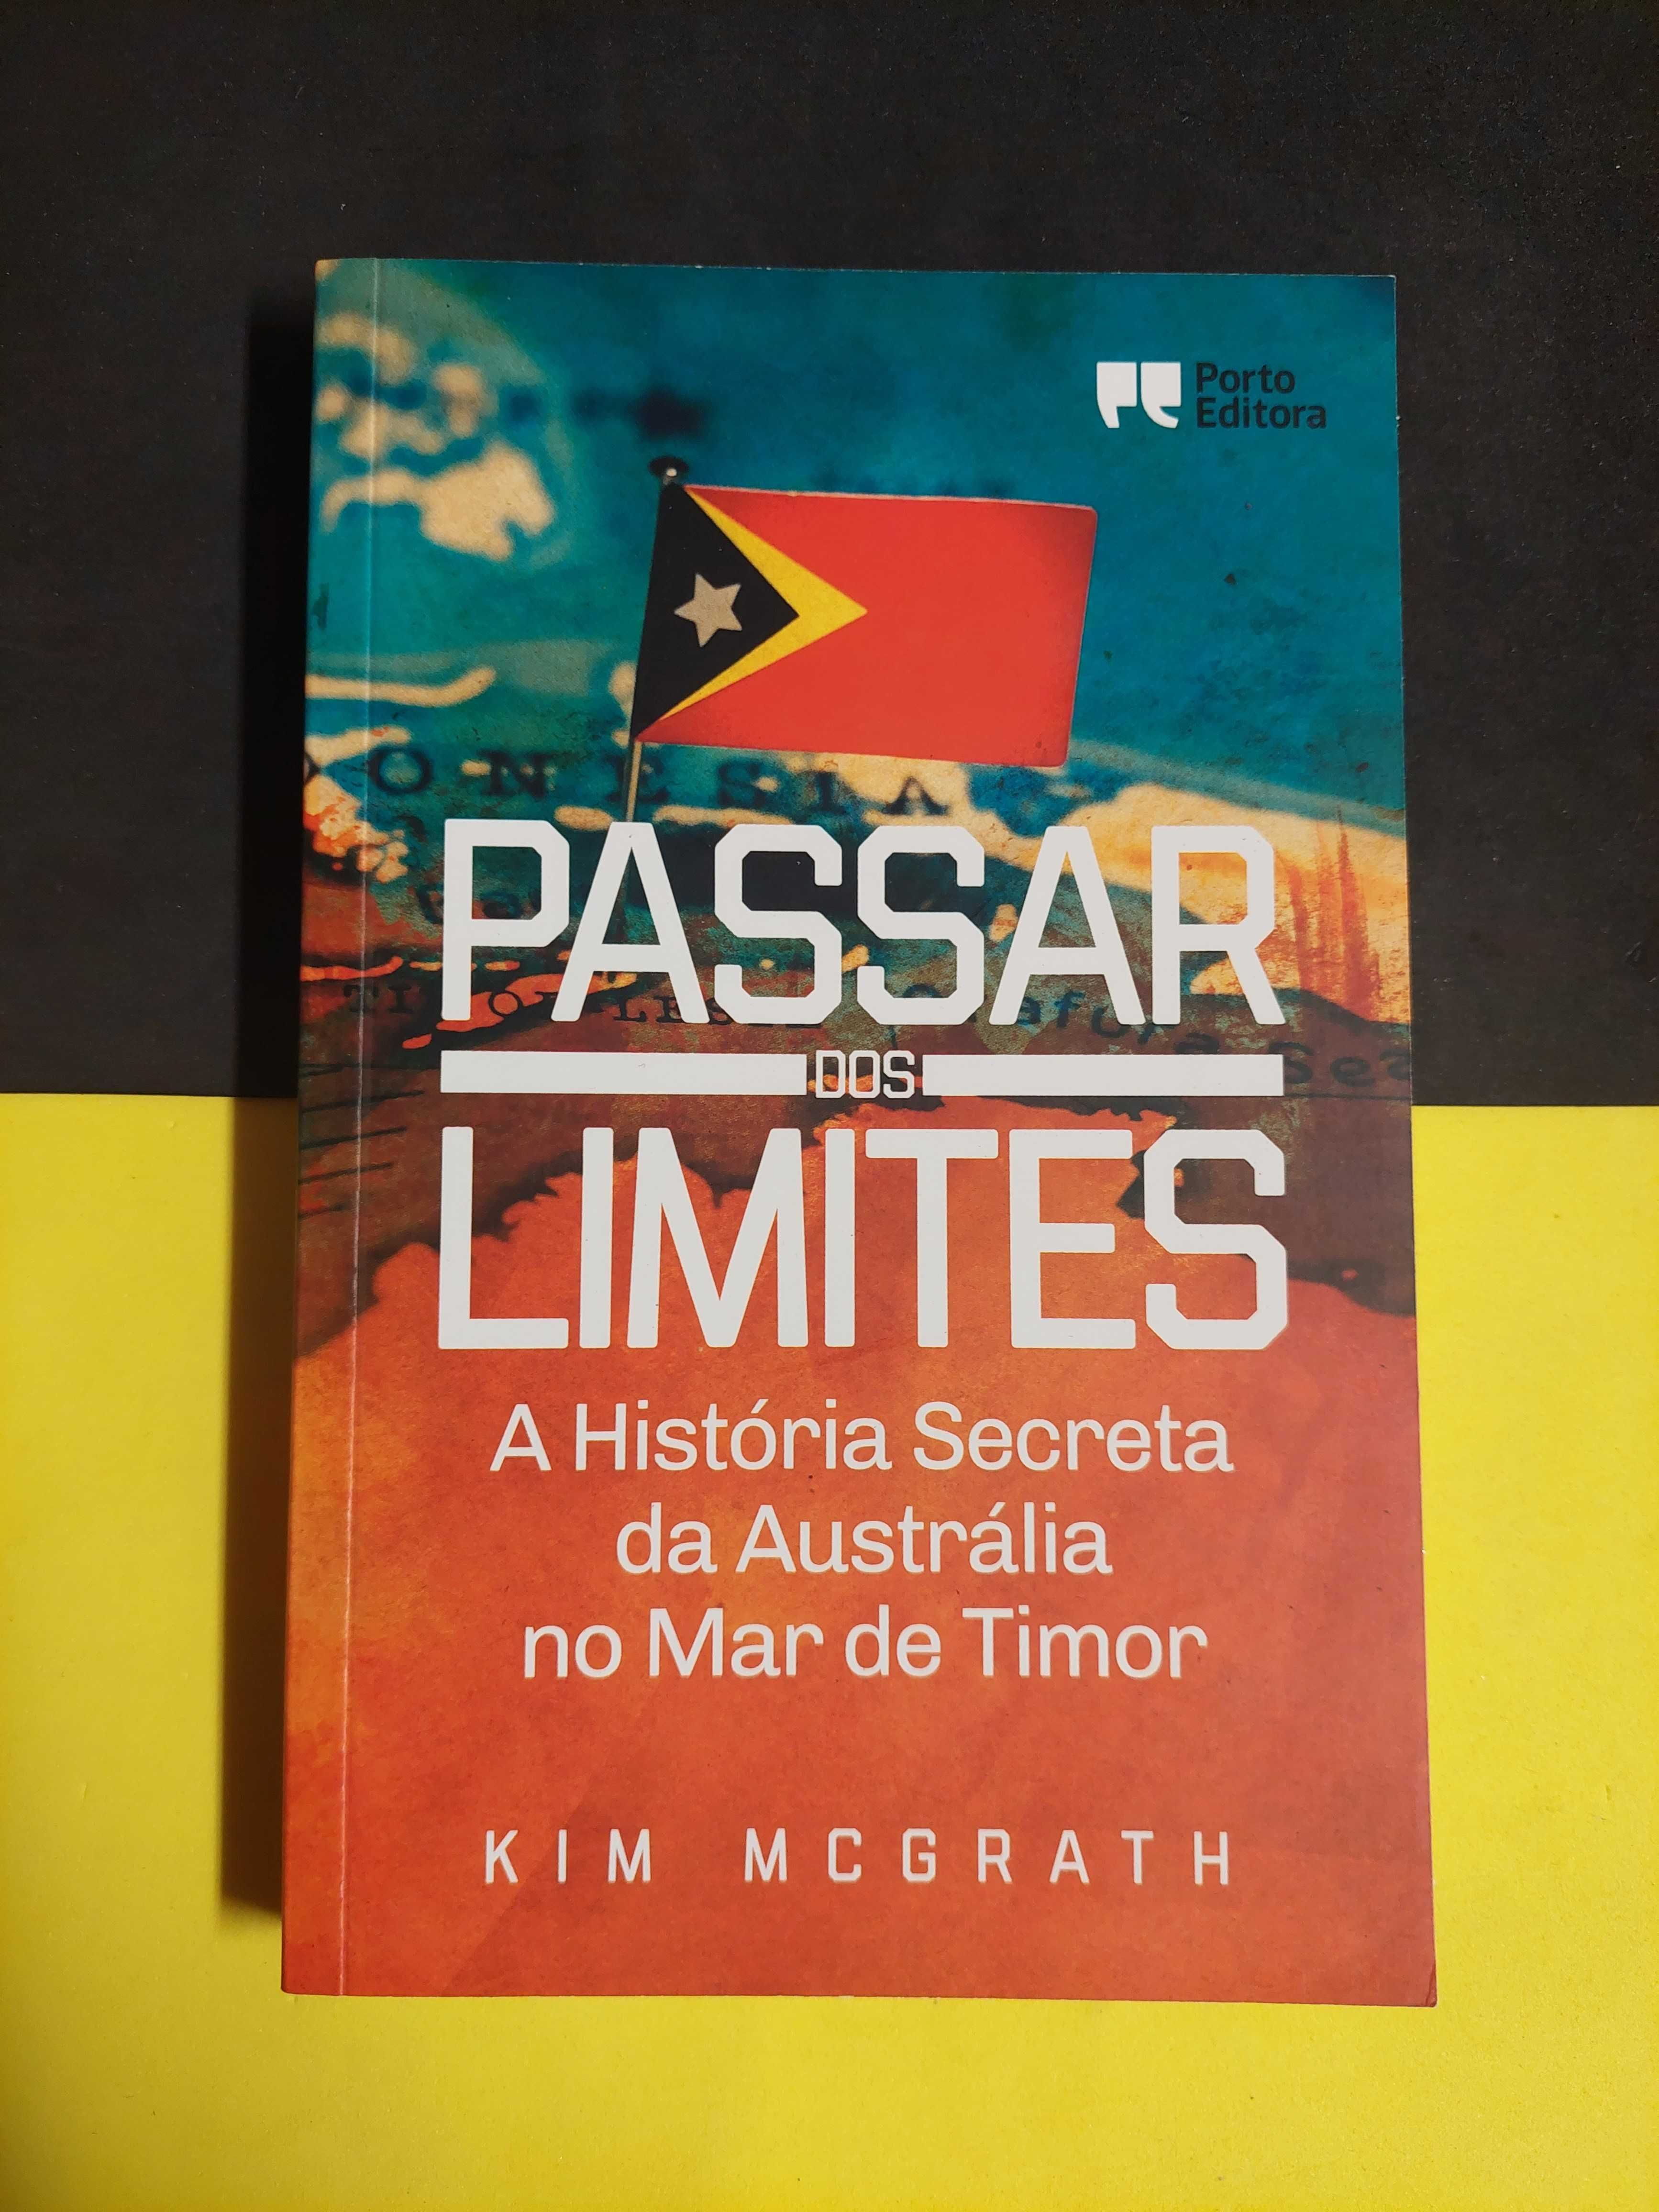 Kim McGrath - Passar dos limites